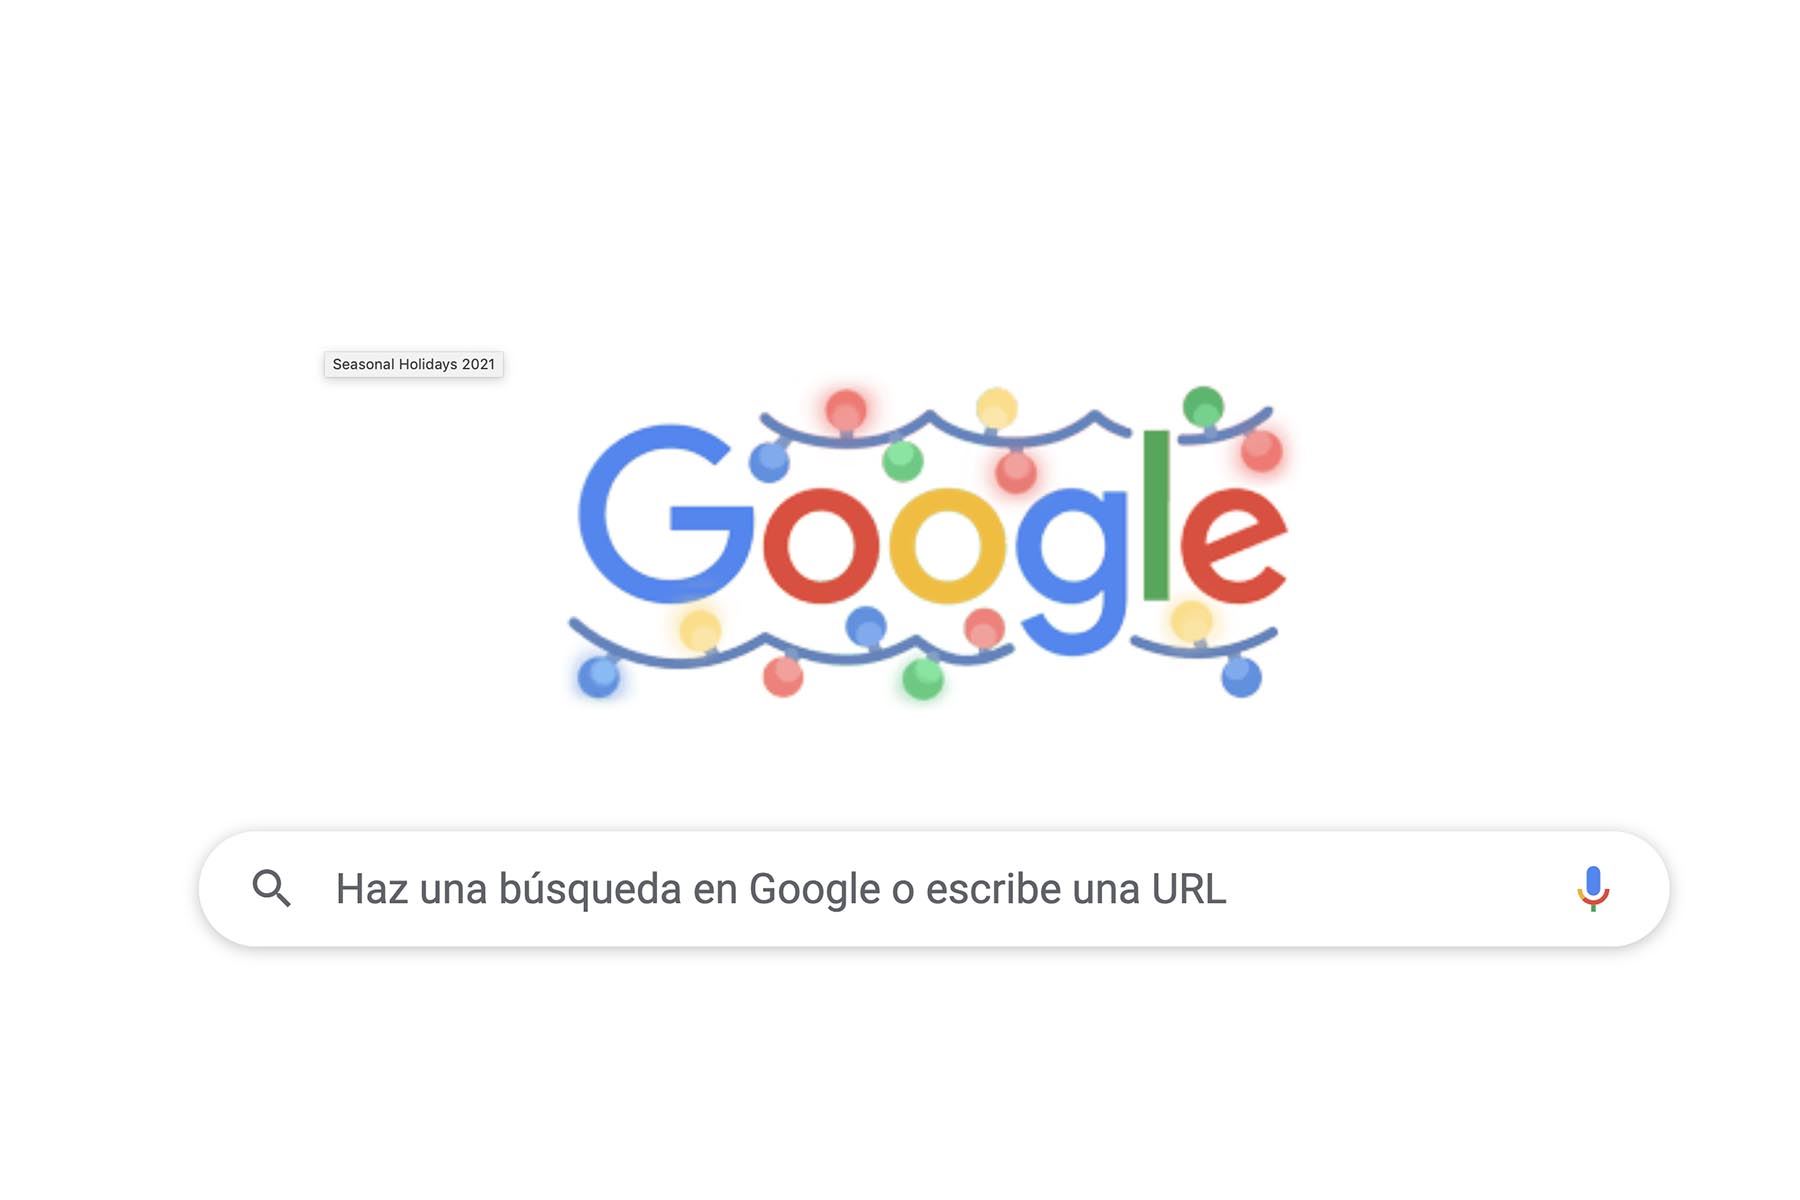 El doodle Seasonal Holidays 2021 muestra el logo de Google adornado con luces navideñas con los colores característicos del gigante de internet.